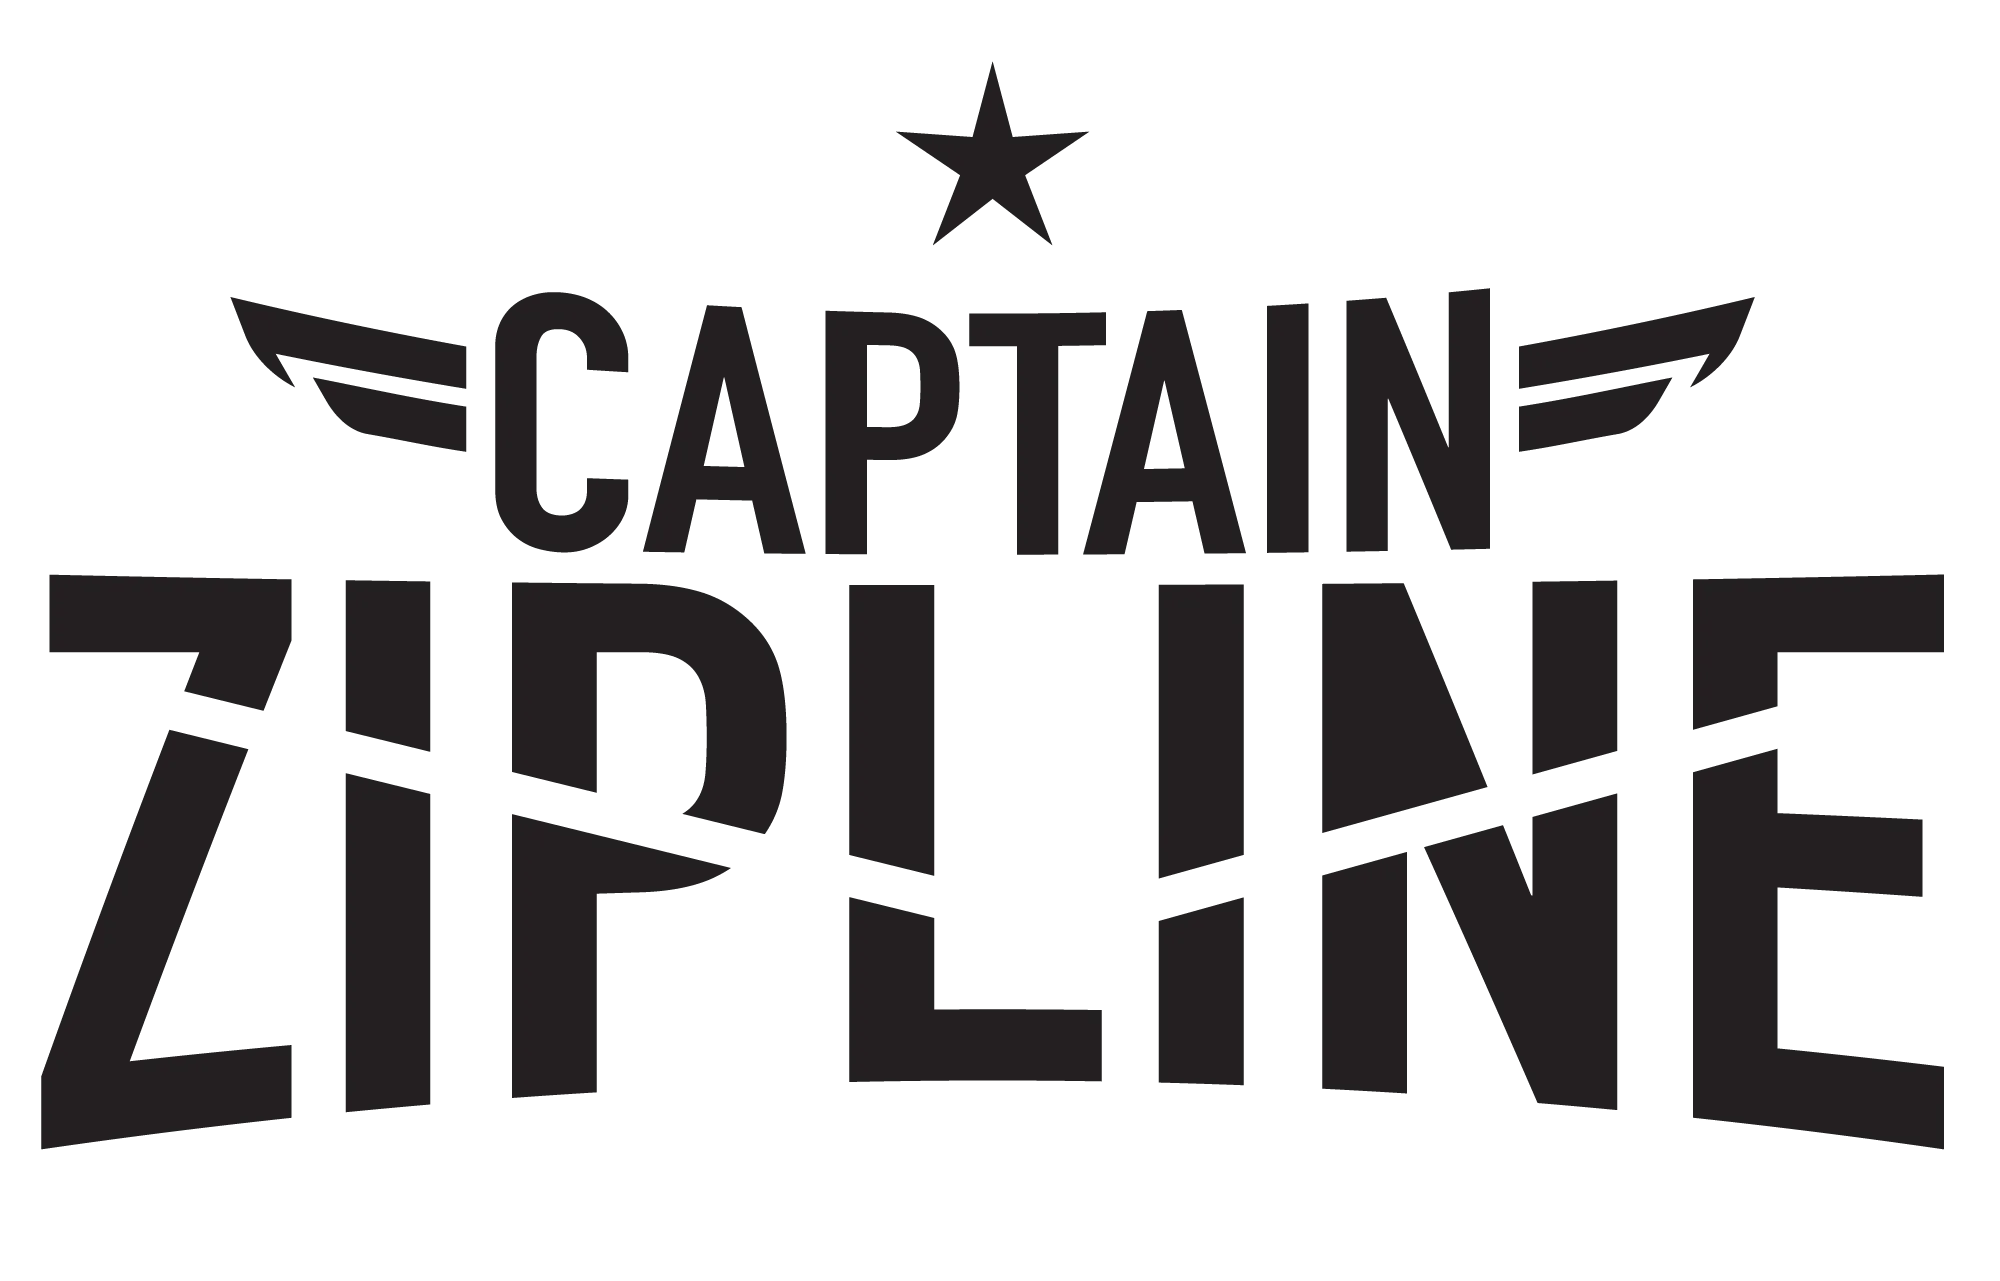 Captain Zipline